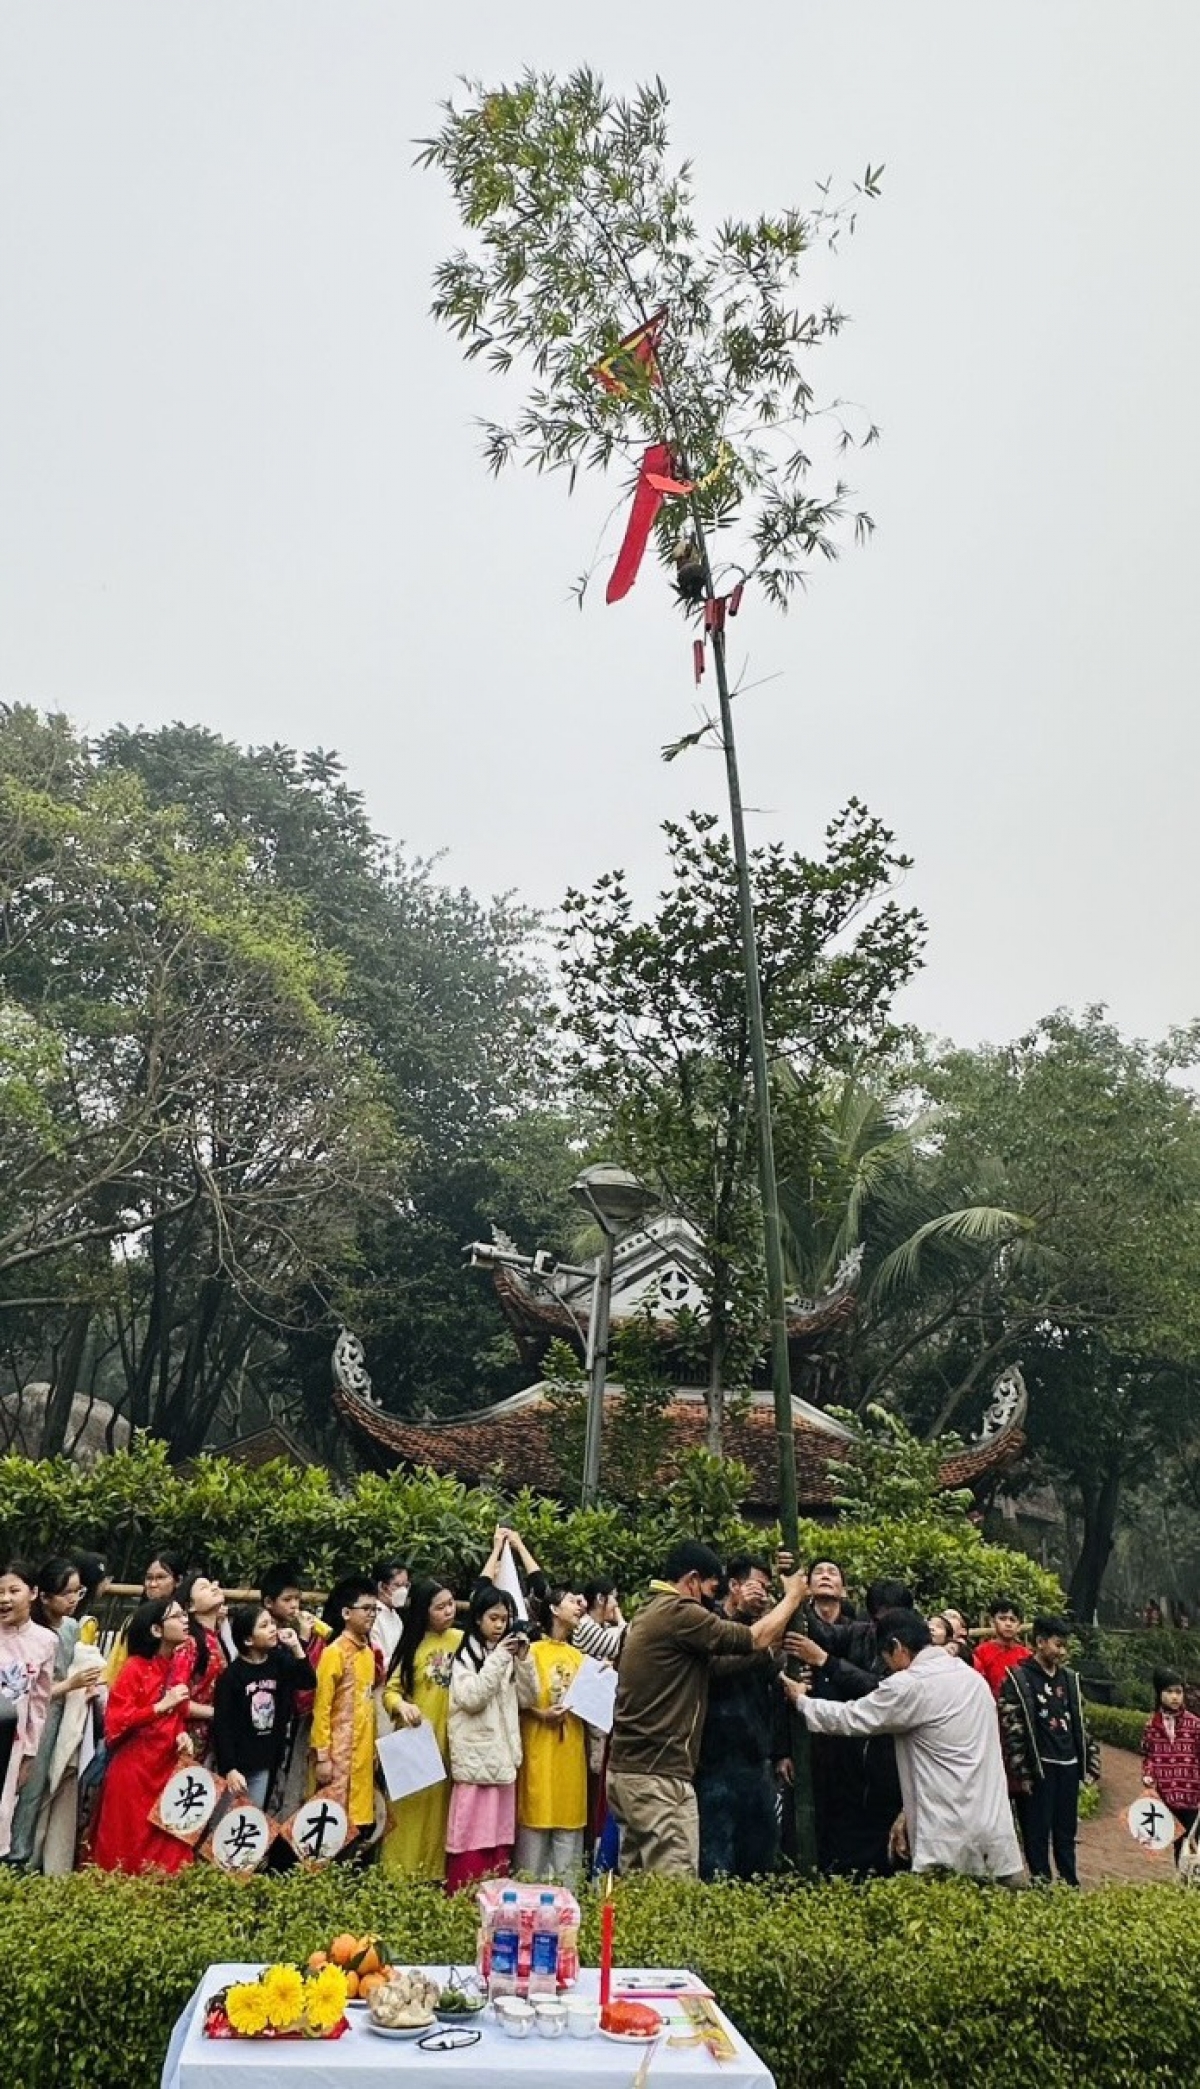 Phong tục dựng cây nêu ngày Tết được các nghệ nhân Bắc Ninh tái hiện tại Bảo tàng Dân tộc học Việt Nam. Ảnh: BTC